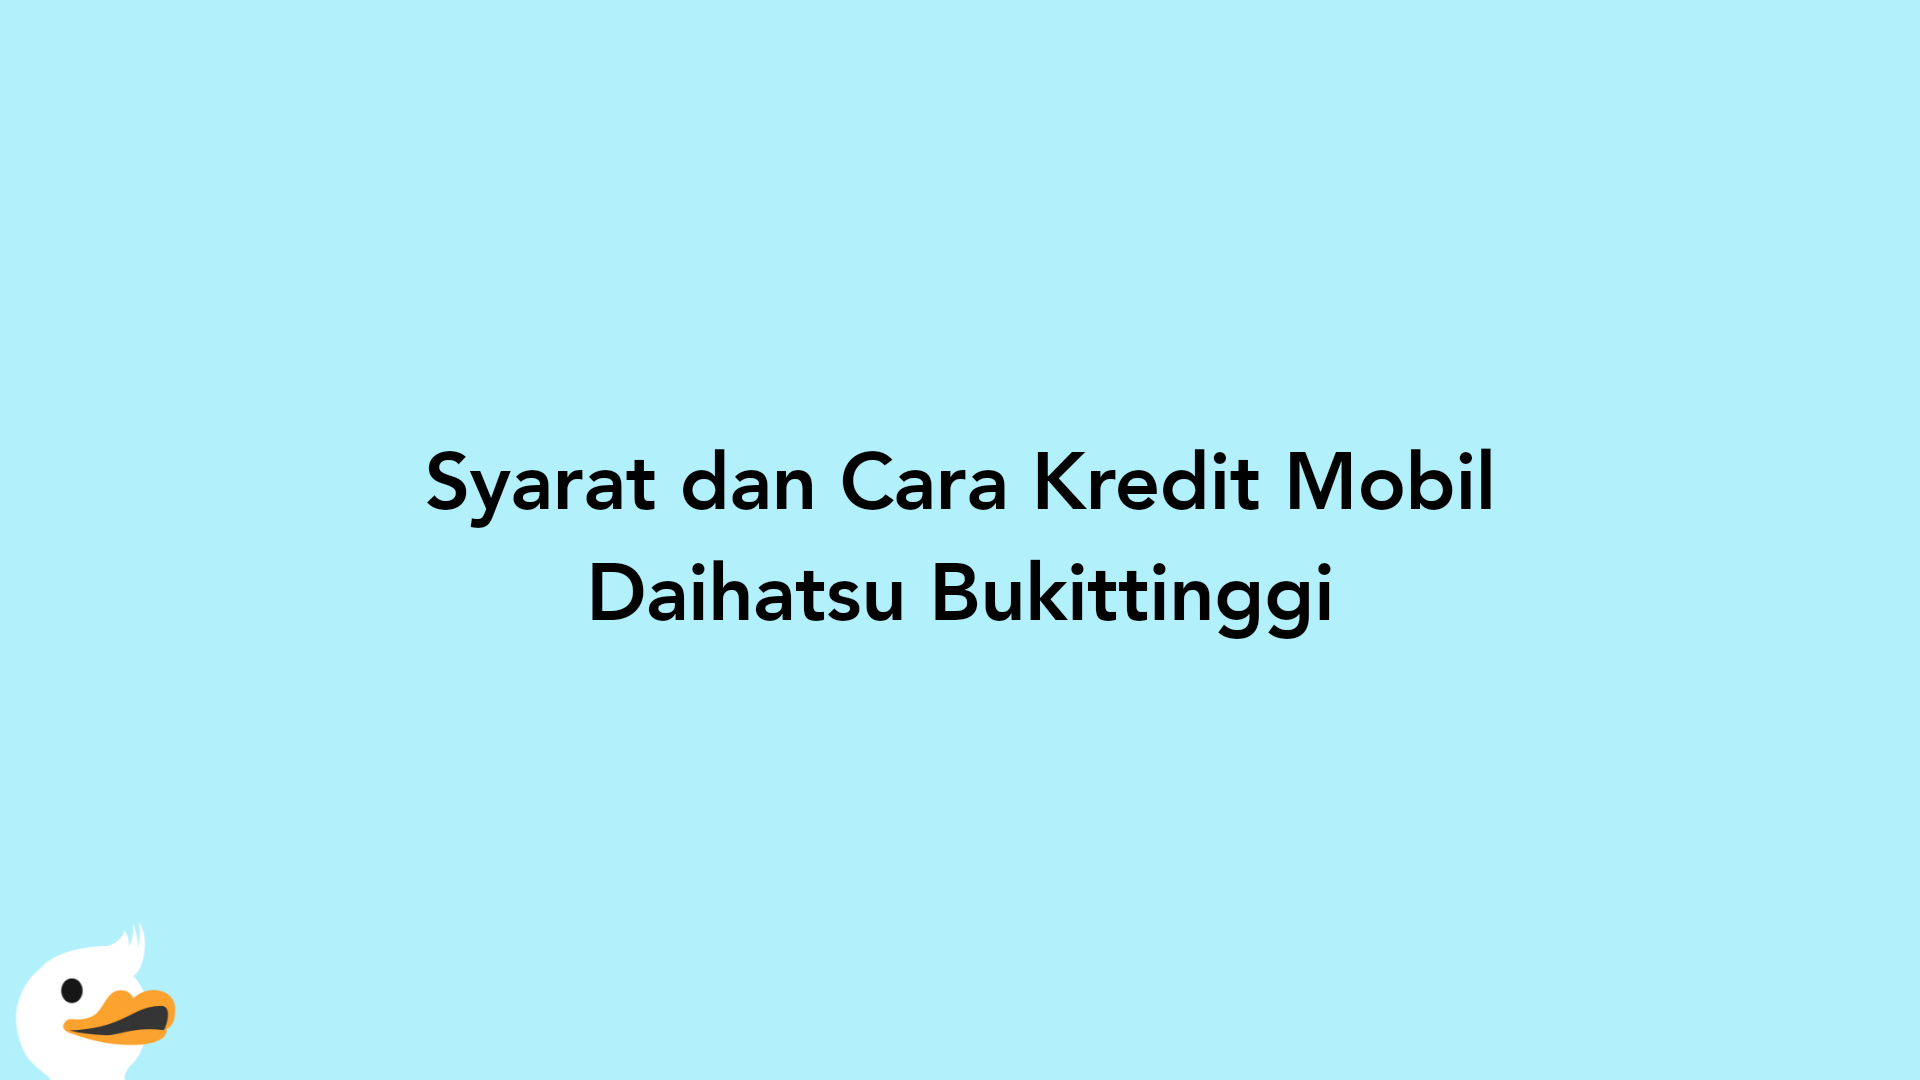 Syarat dan Cara Kredit Mobil Daihatsu Bukittinggi